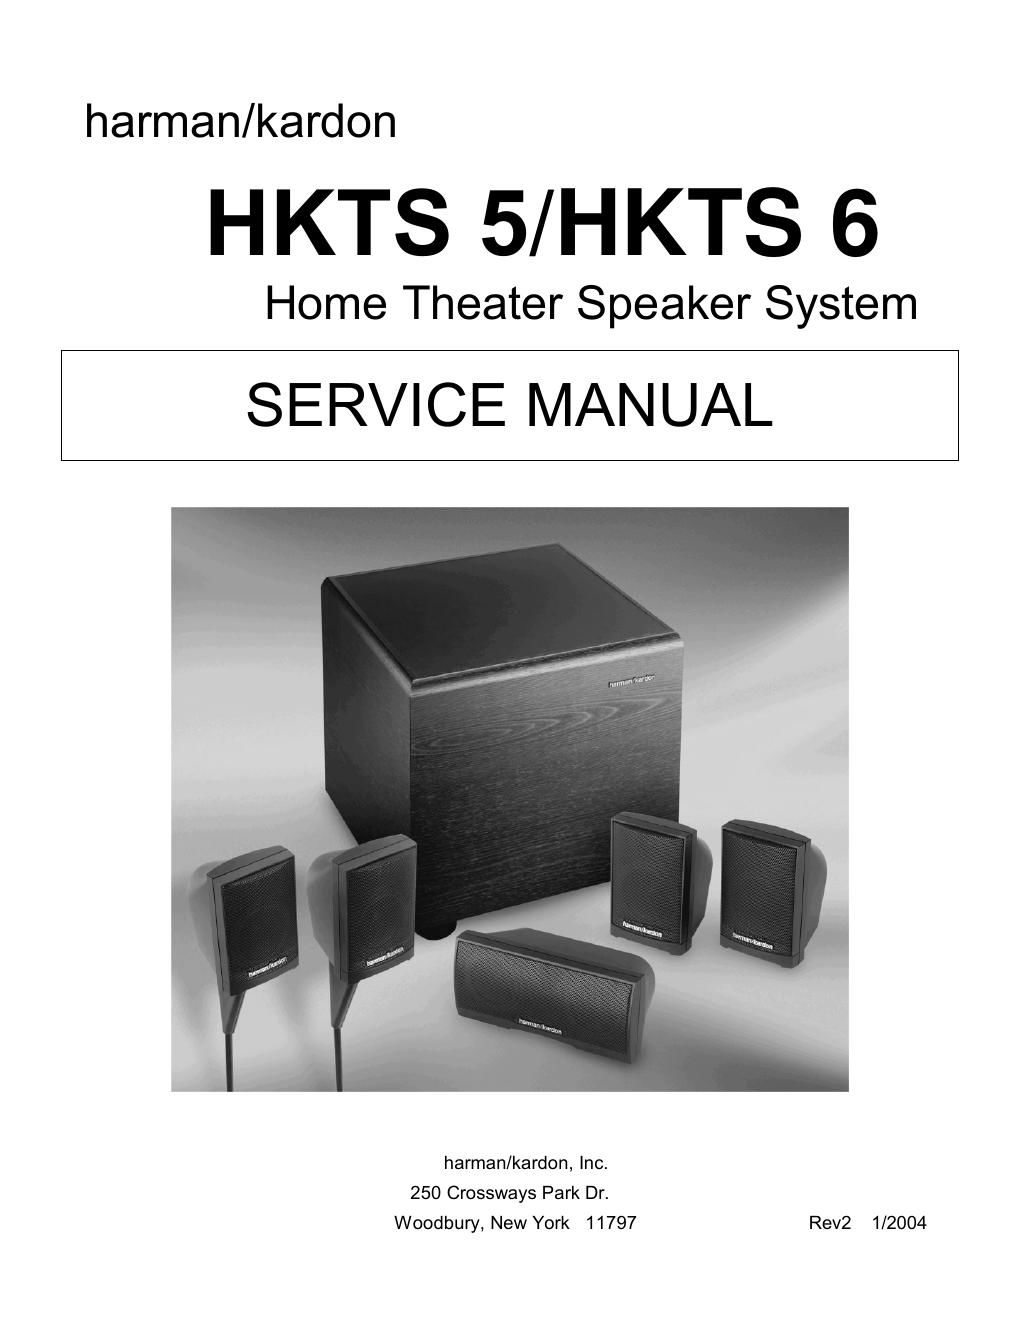 harman kardon hkts 5 6 service manual